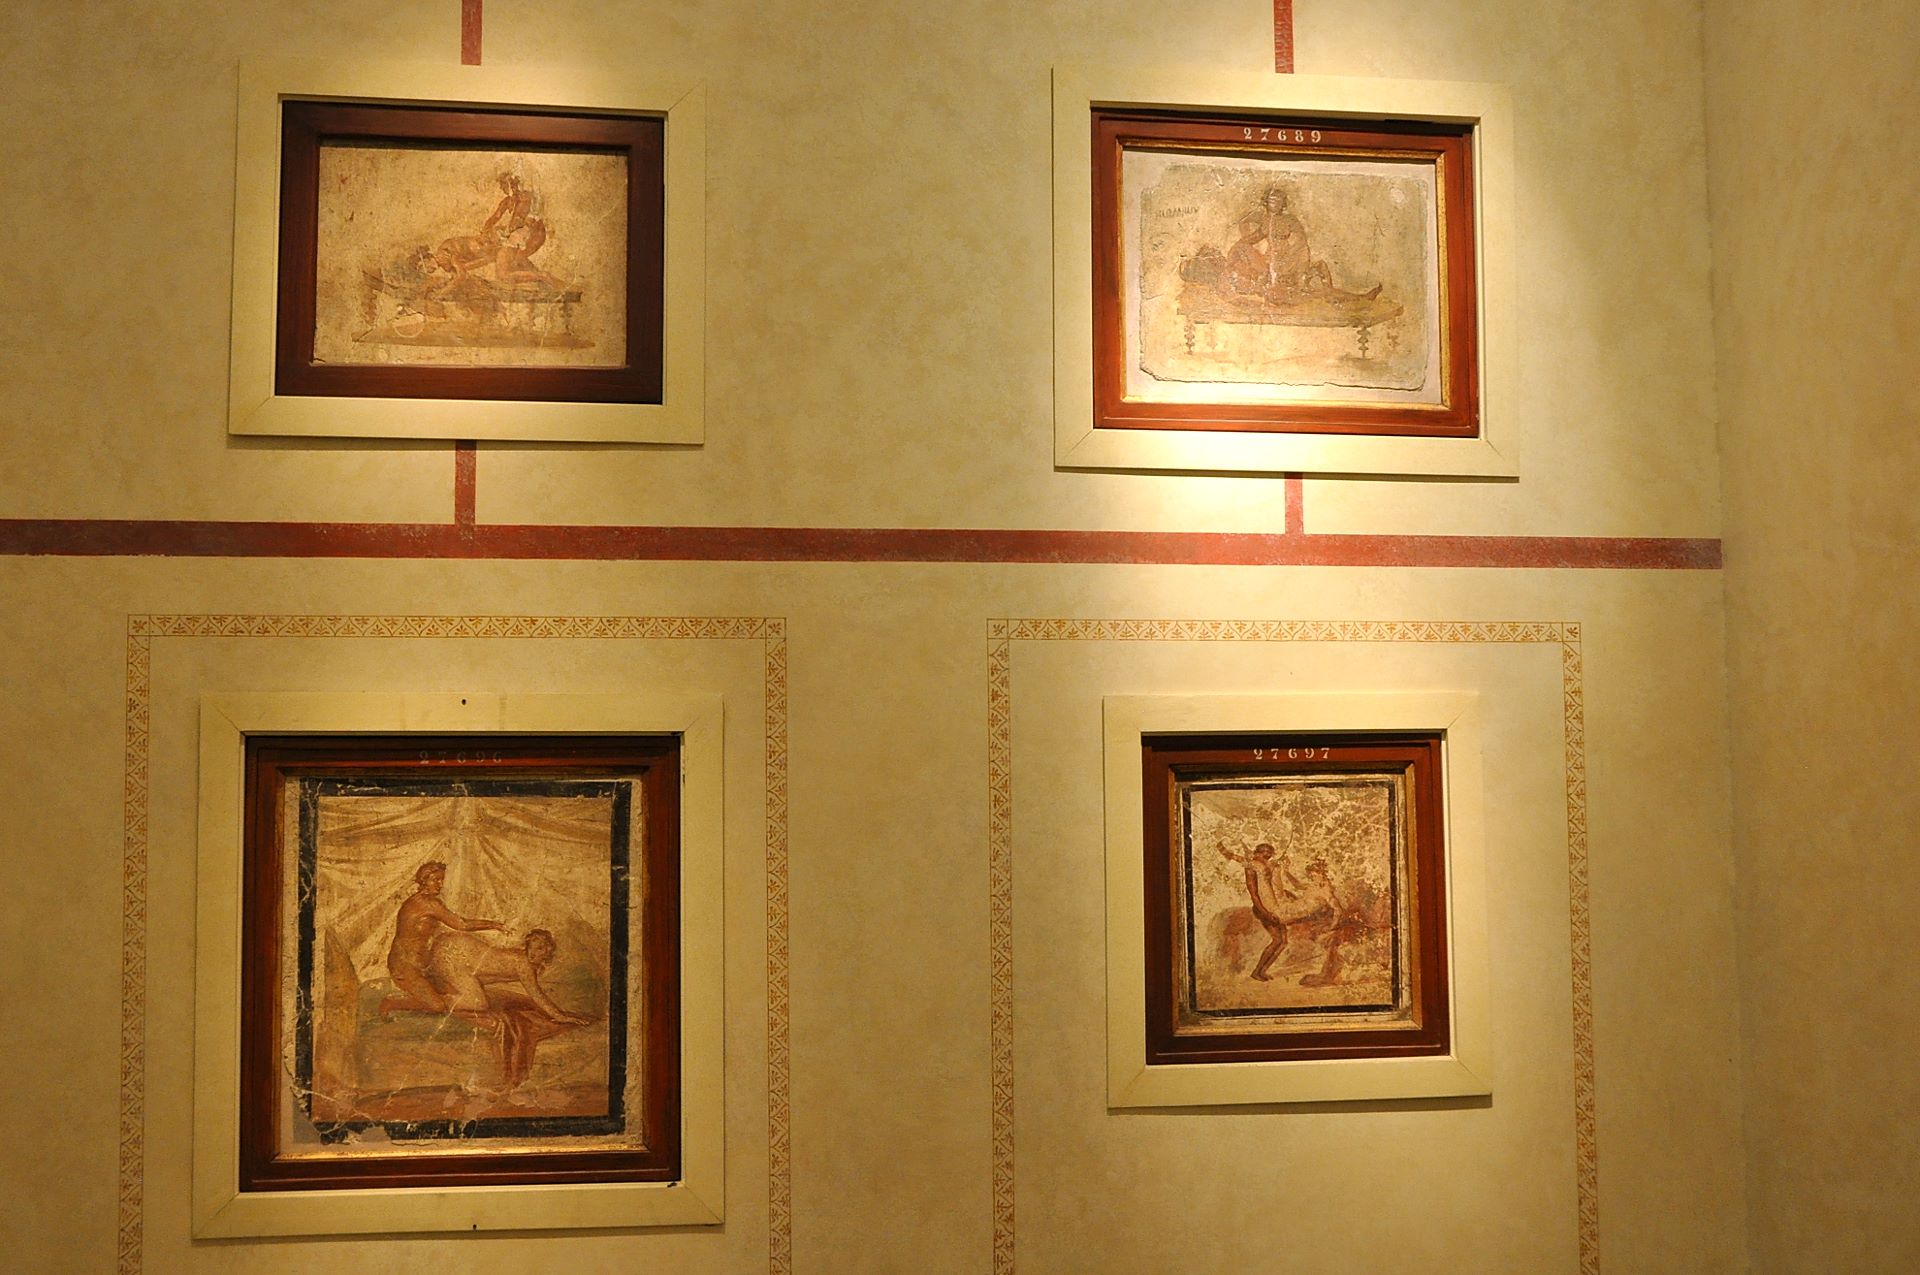 Nicht nur in den Bordellen Pompejis gab es erotische Darstellungen, diese waren auch in den Häusern anzutreffen